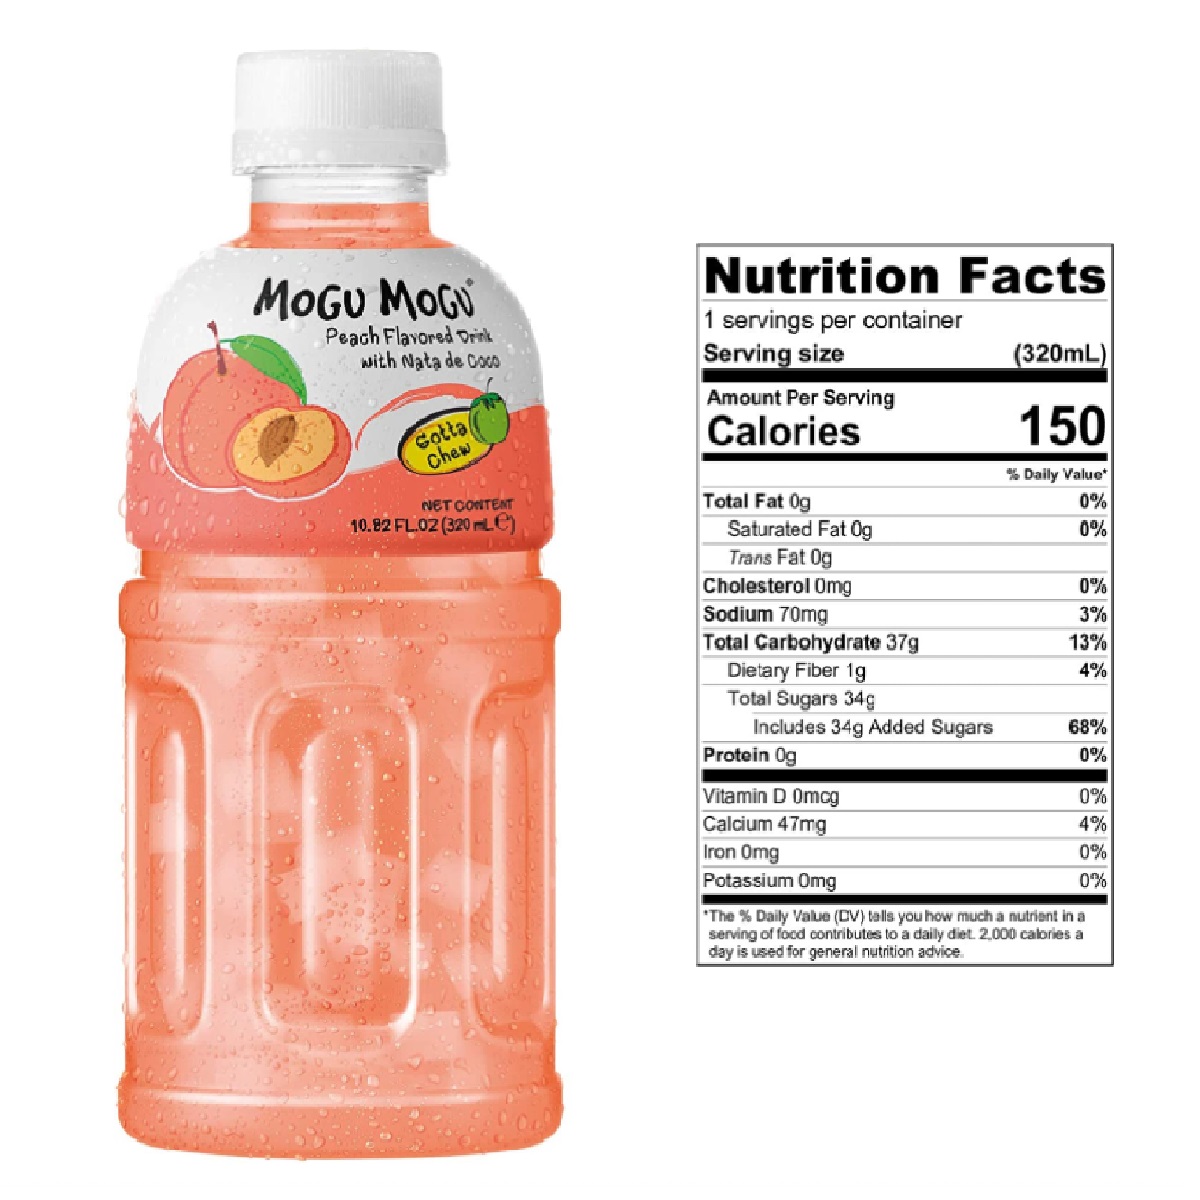 Mogu Mogu Peach Flavored Drink with Nata de Coco 320ml